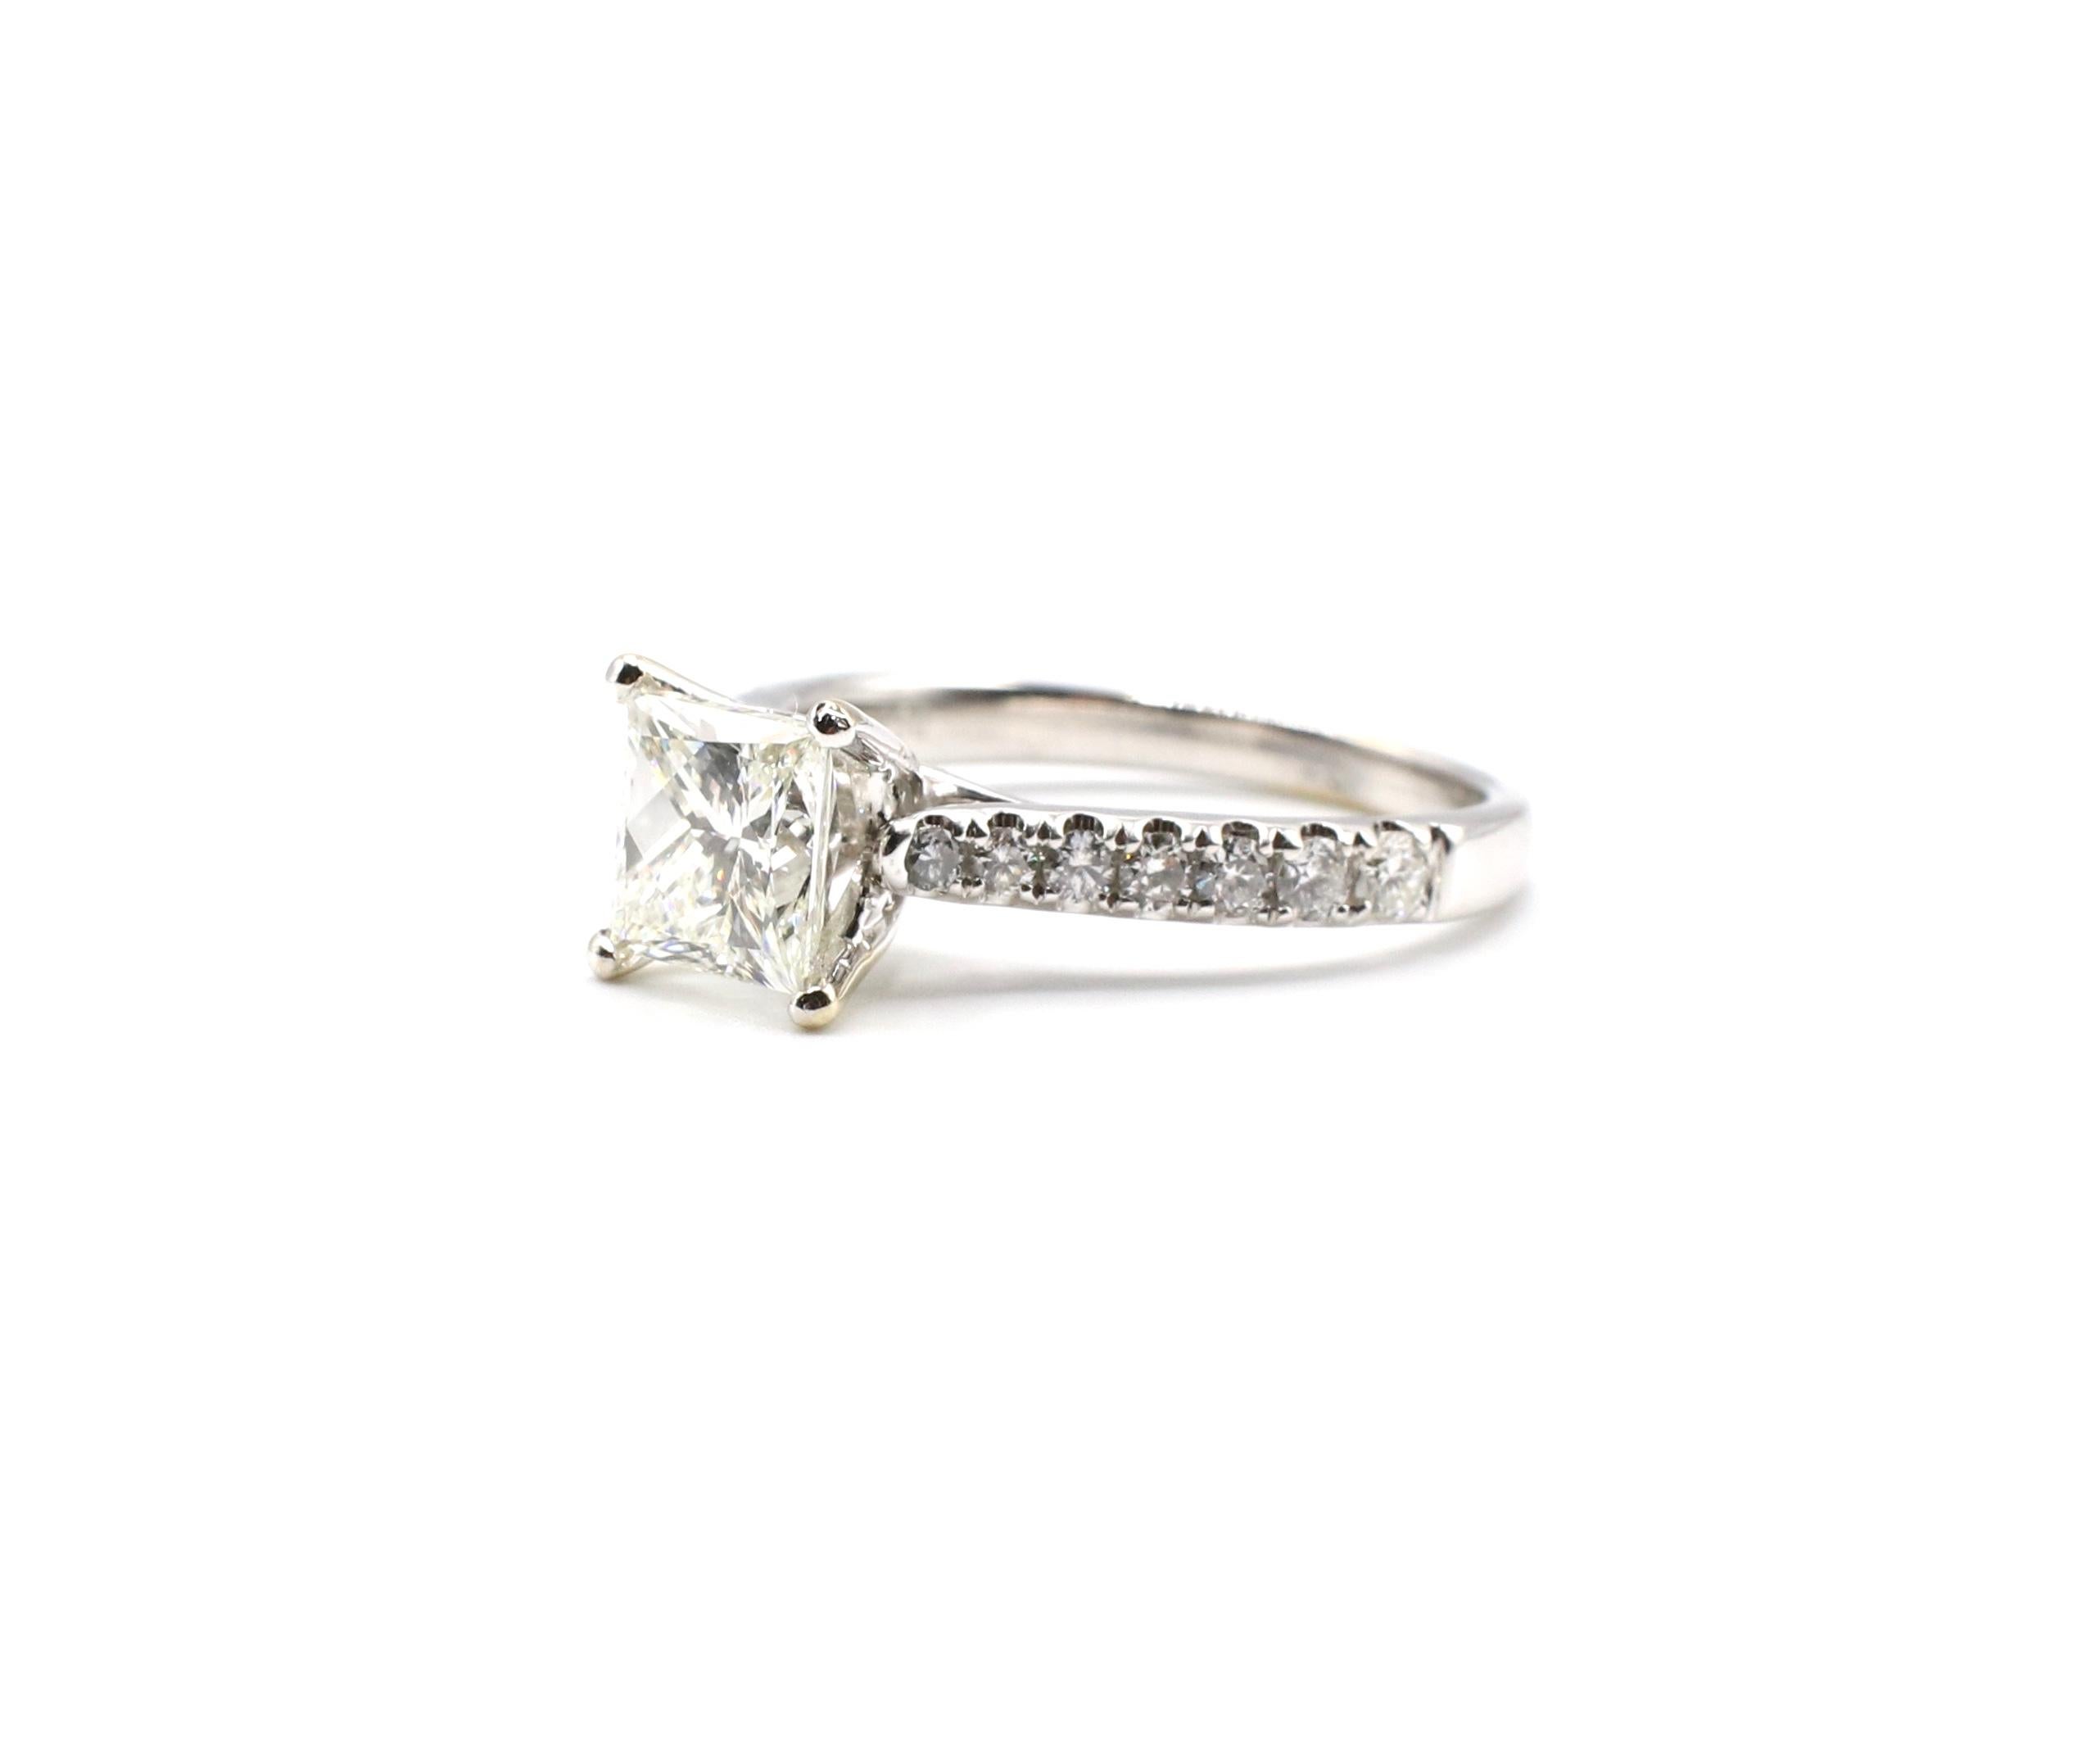 IGI Certified 1.48 Carat I VS1 Princess Cut 18 Karat White Gold Diamond Ring 5